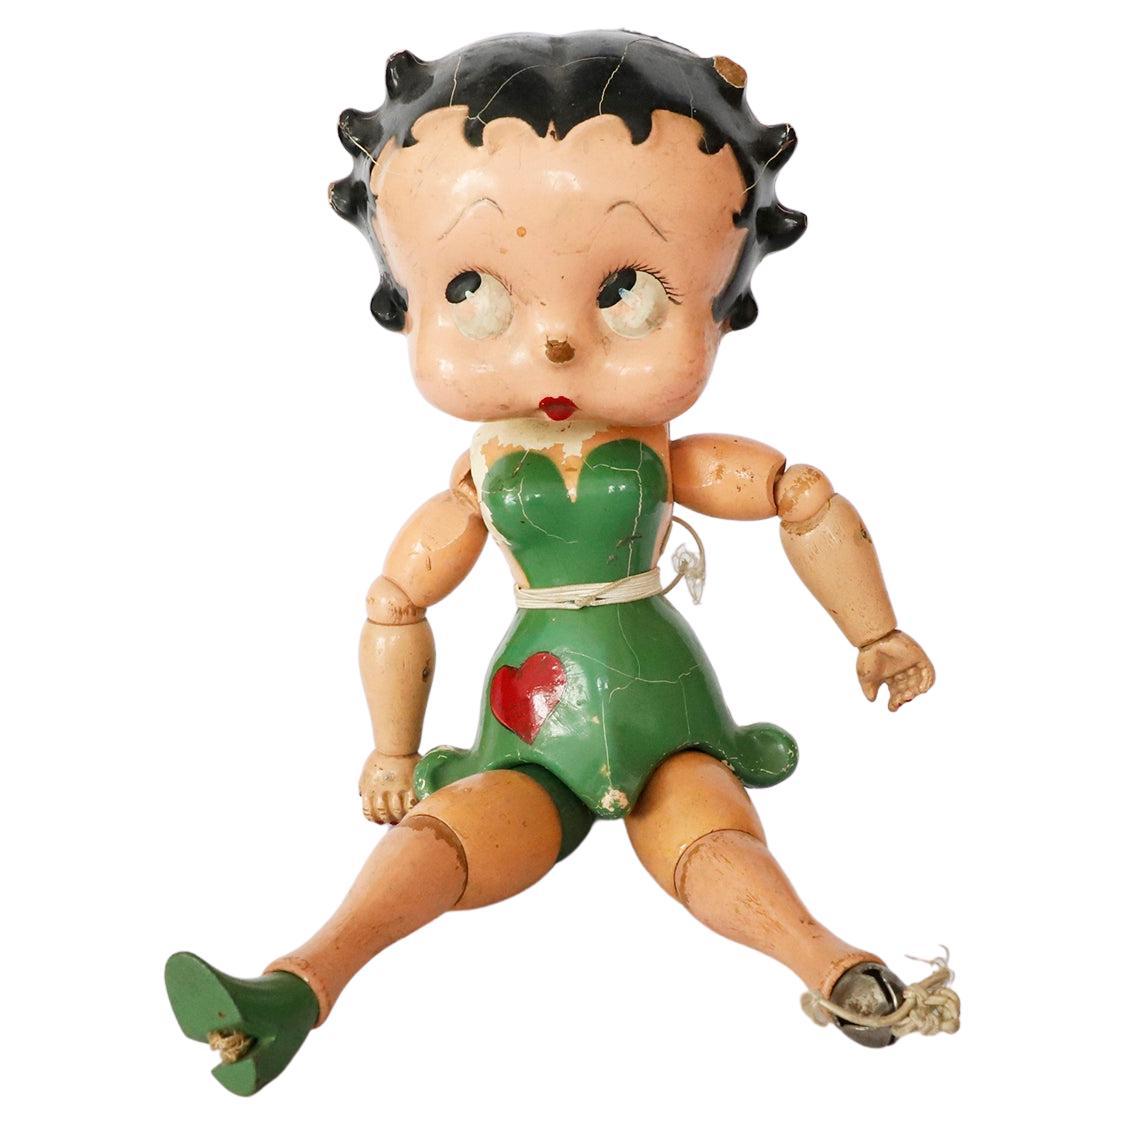 Betty Boop Fleischer-Puppe, zusammengefügt, 1930er Jahre